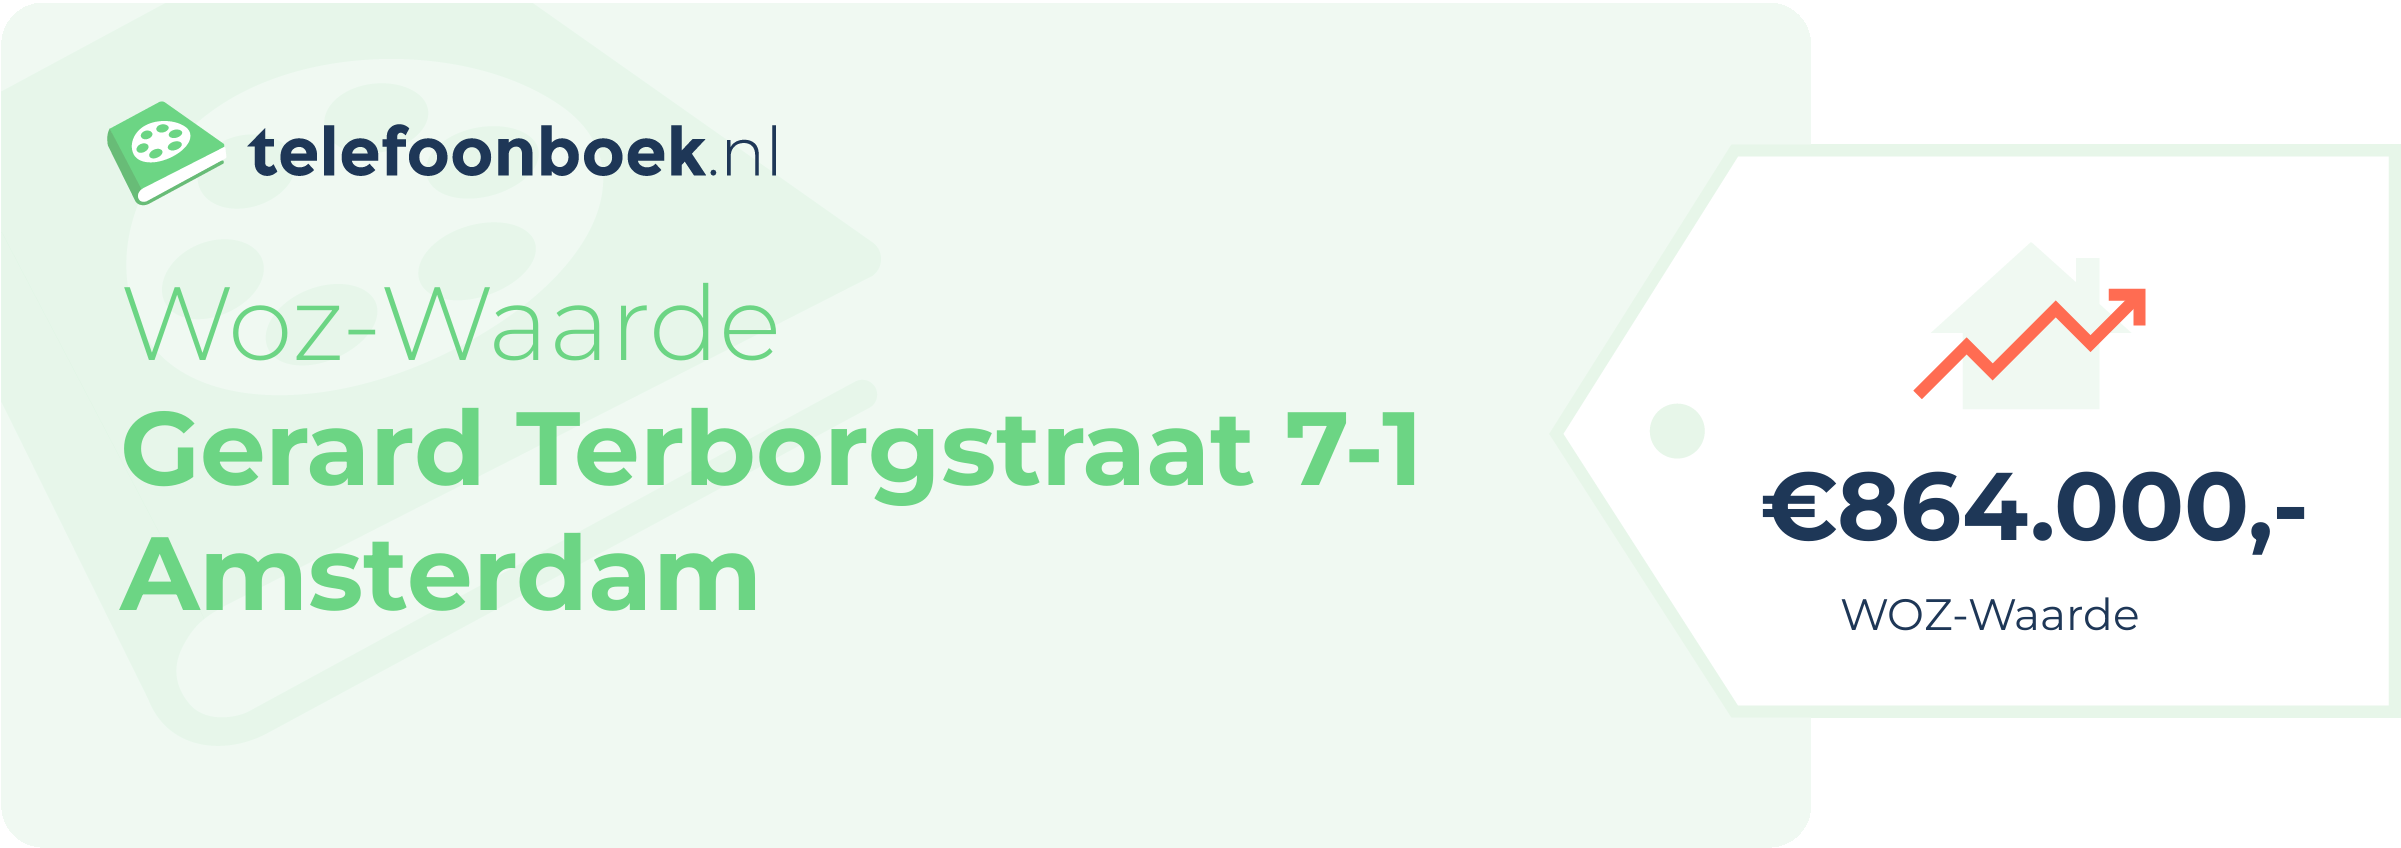 WOZ-waarde Gerard Terborgstraat 7-1 Amsterdam